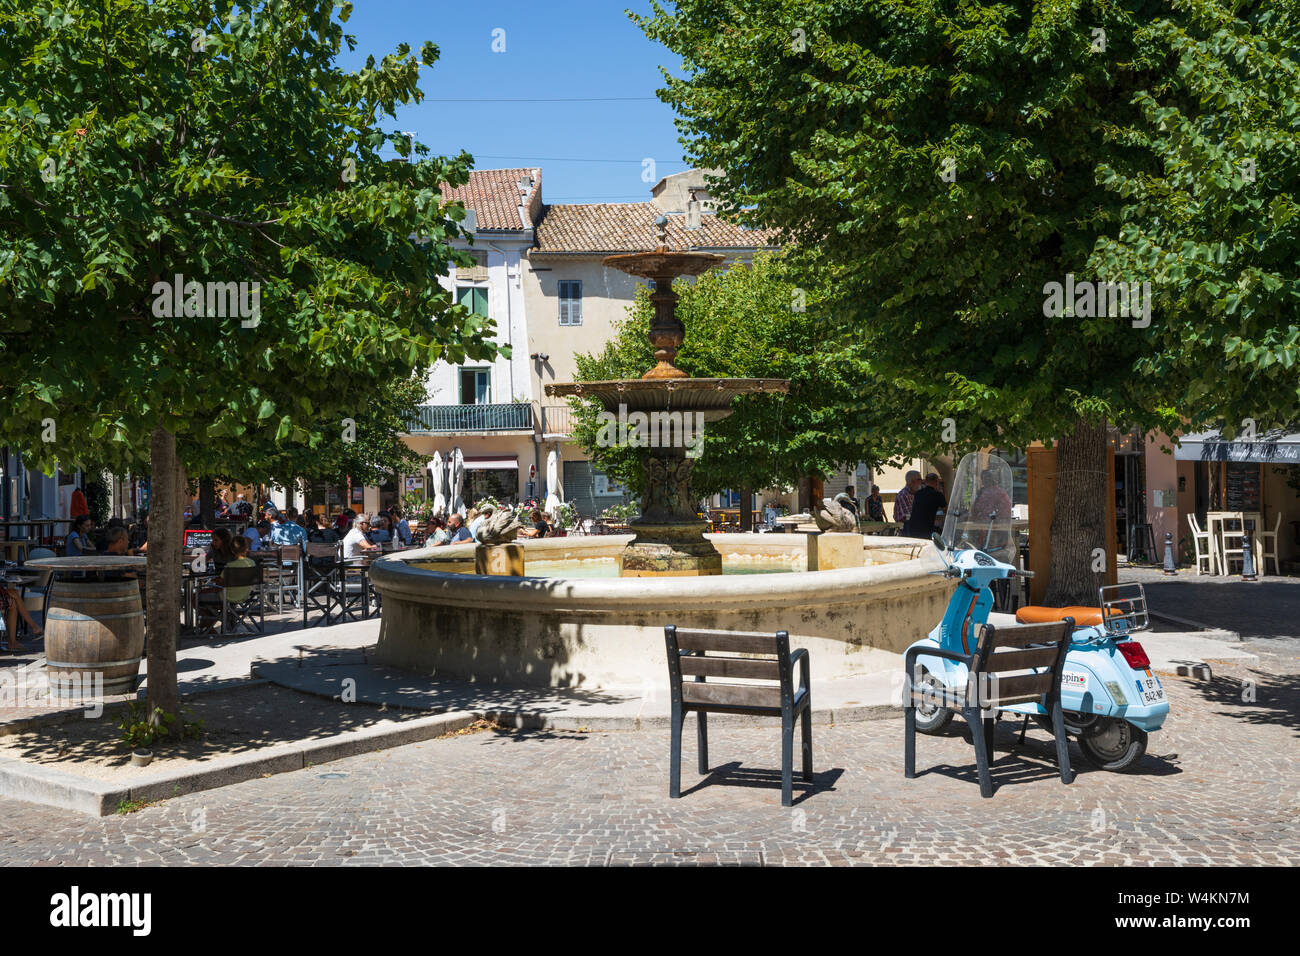 Ristorante in scena la Place du Marche, Saint-Paul-Trois-Chateaux, dipartimento Drome, Auvergne-Rhone-Alpes, Provence, Francia Foto Stock